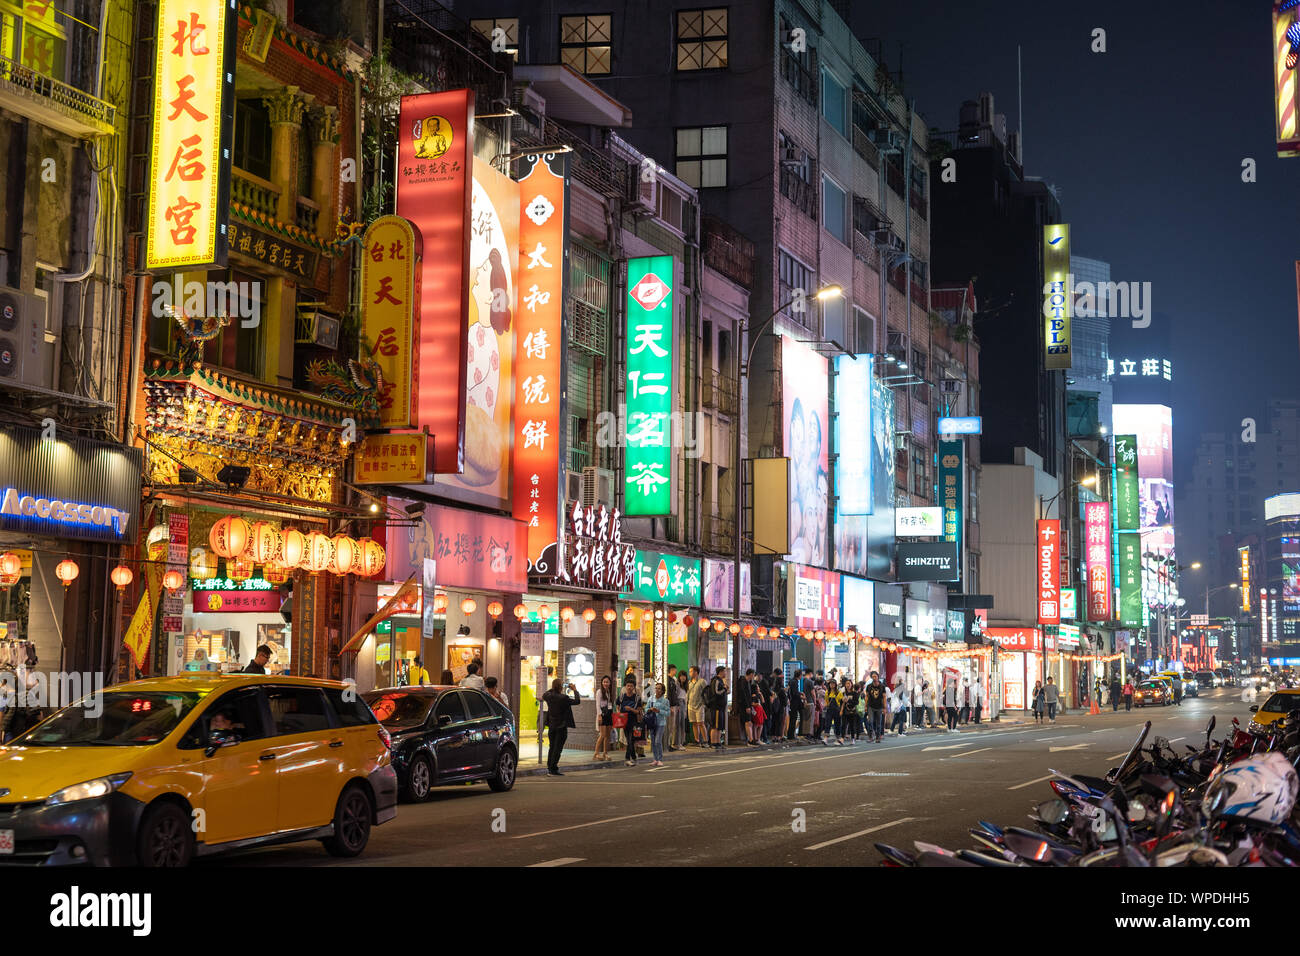 Taipei, Taiwan: Leere Urban Street in der Nacht beleuchtet durch bunte Werbung Leuchtreklame mit chinesischen Schriftzeichen. Die Menschen warten auf Bus, Taxi fahren durch. Stockfoto